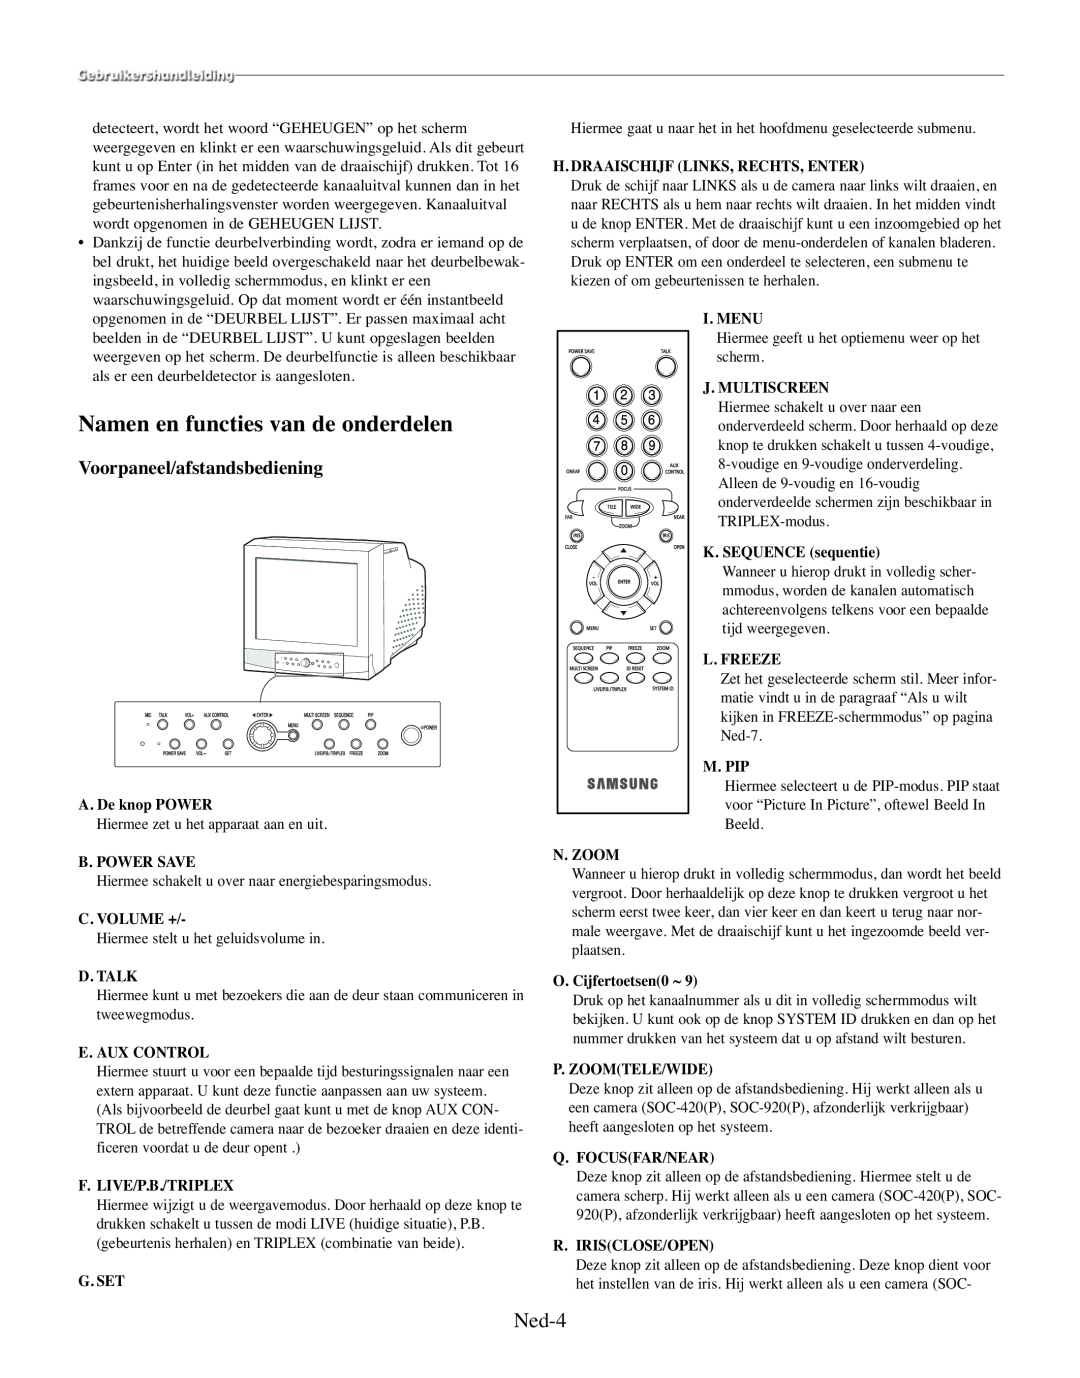 Samsung SMO-210TRP Namen en functies van de onderdelen, Ned-4, Voorpaneel/afstandsbediening, A. De knop POWER, C. Volume + 